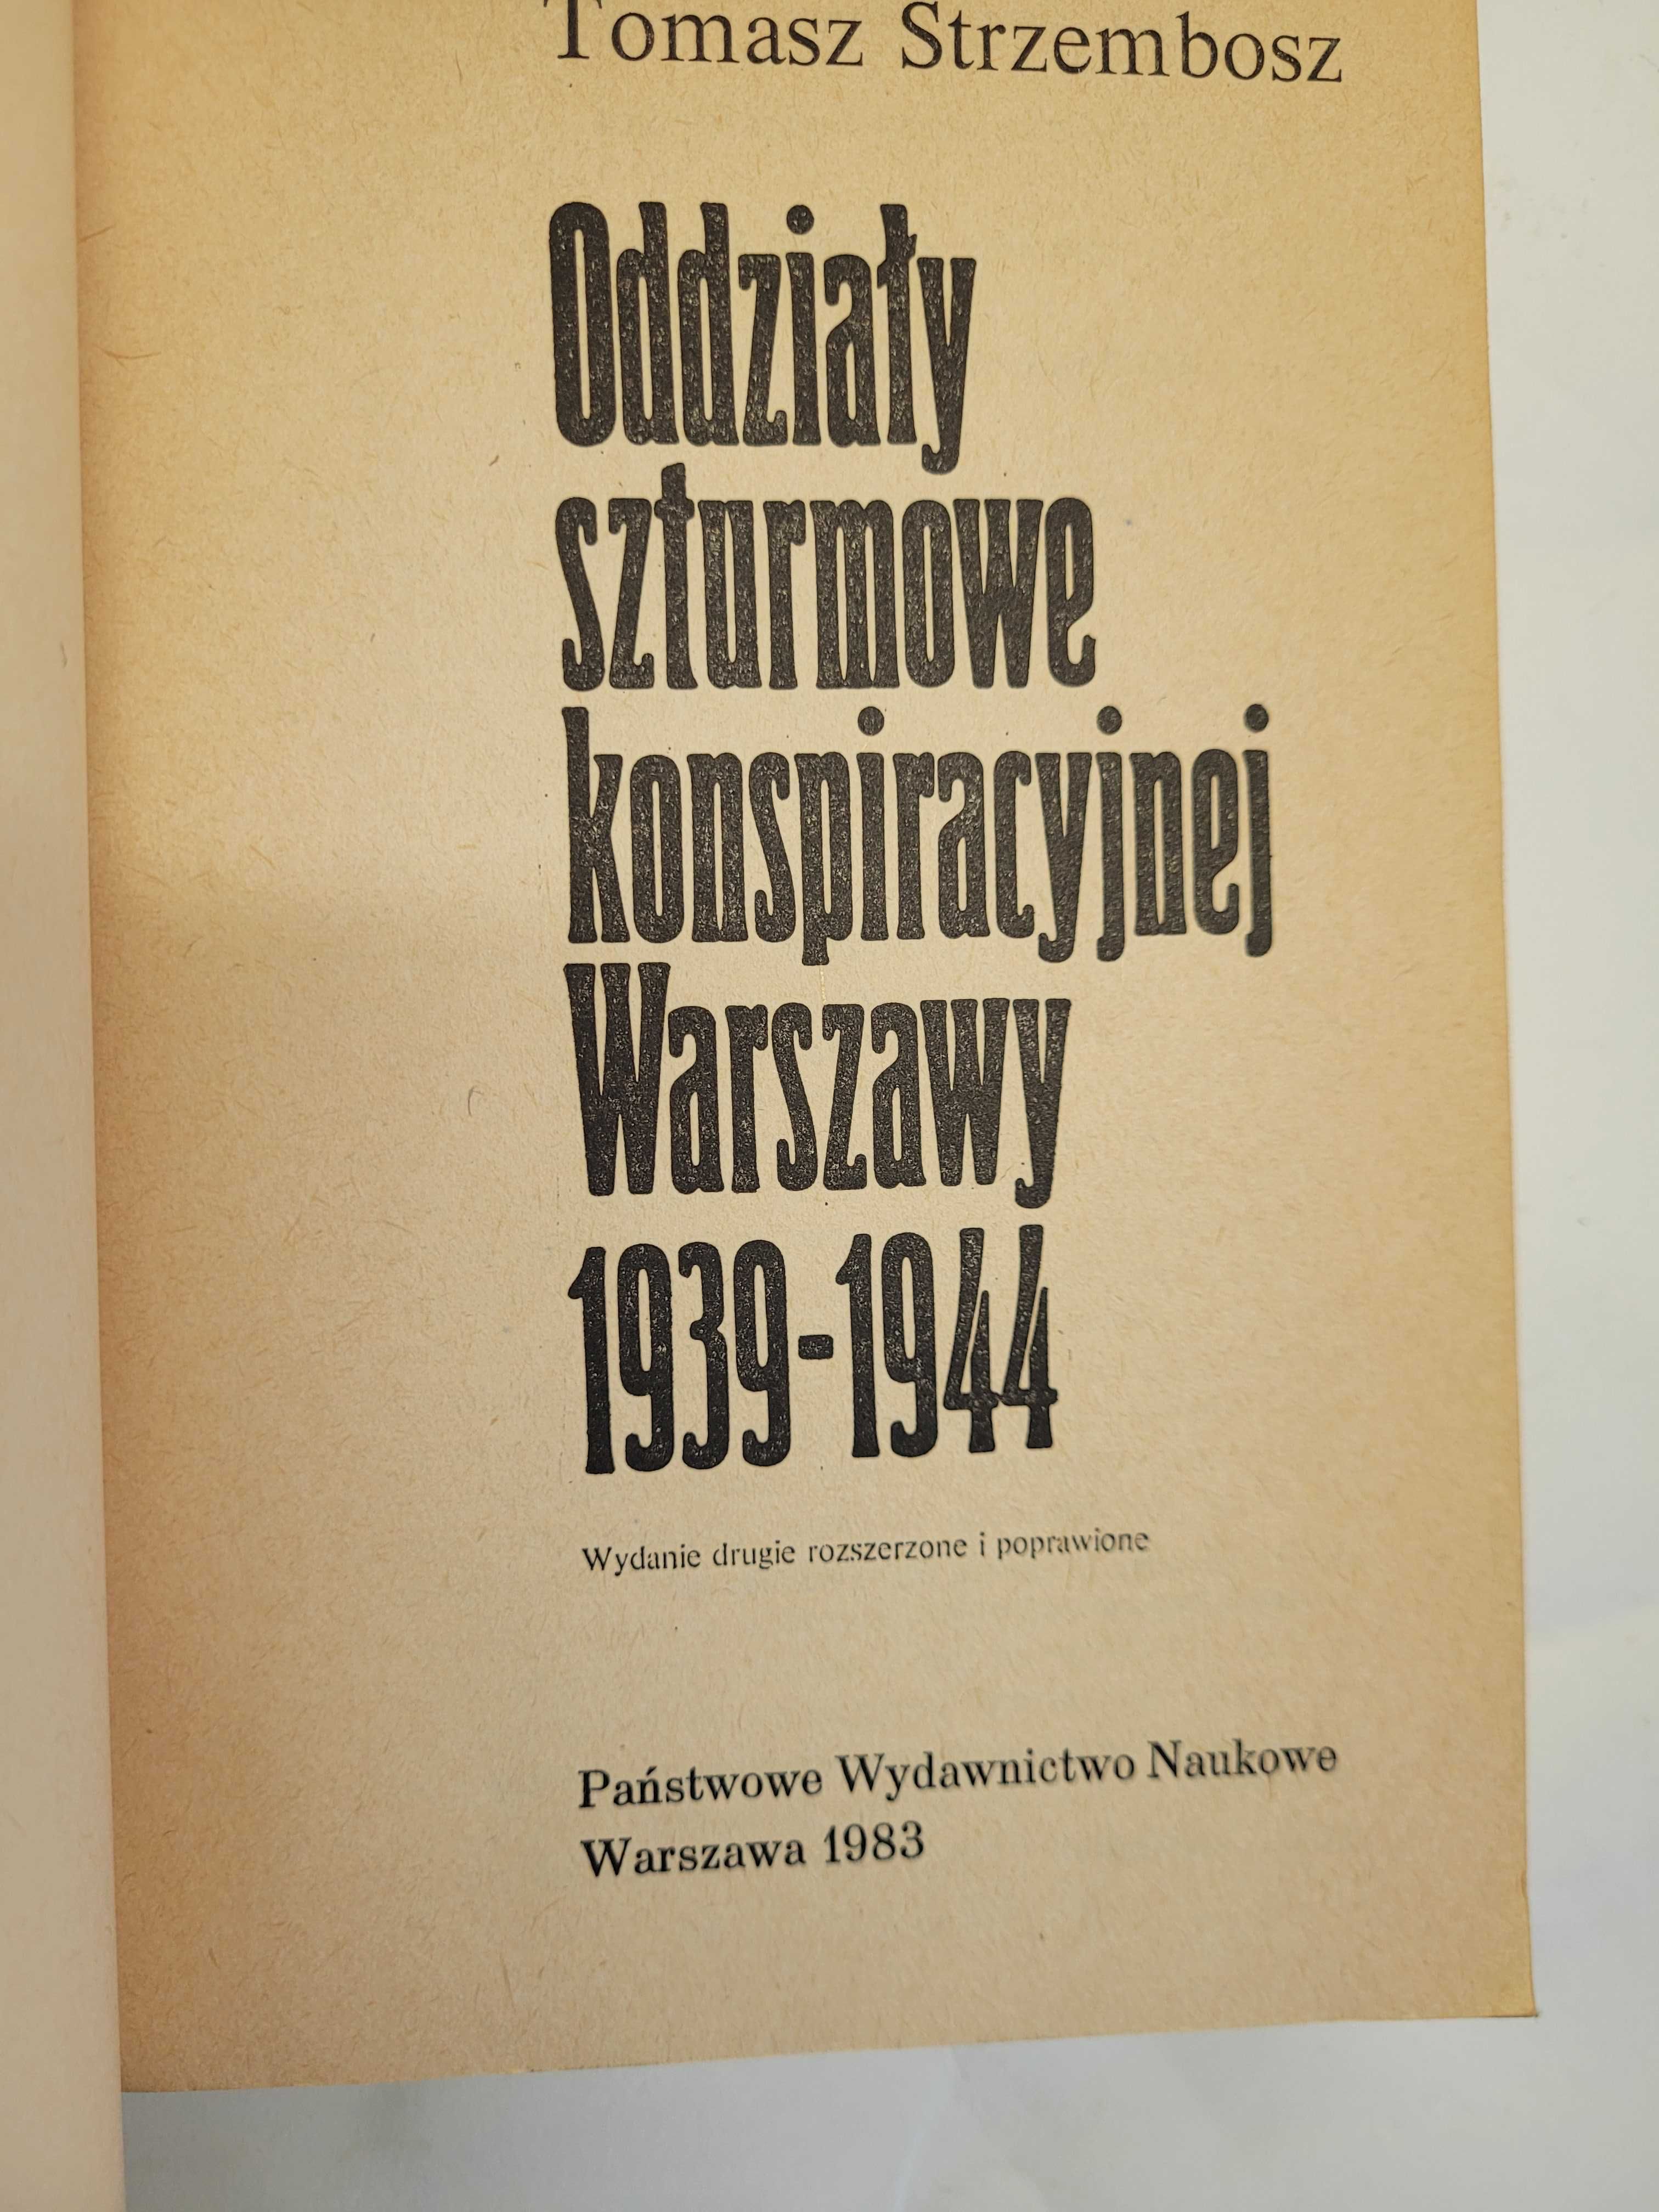 Odziały szturmowe konspiracyjnej Warszawa 1939 - 1944 T. Strzembosz